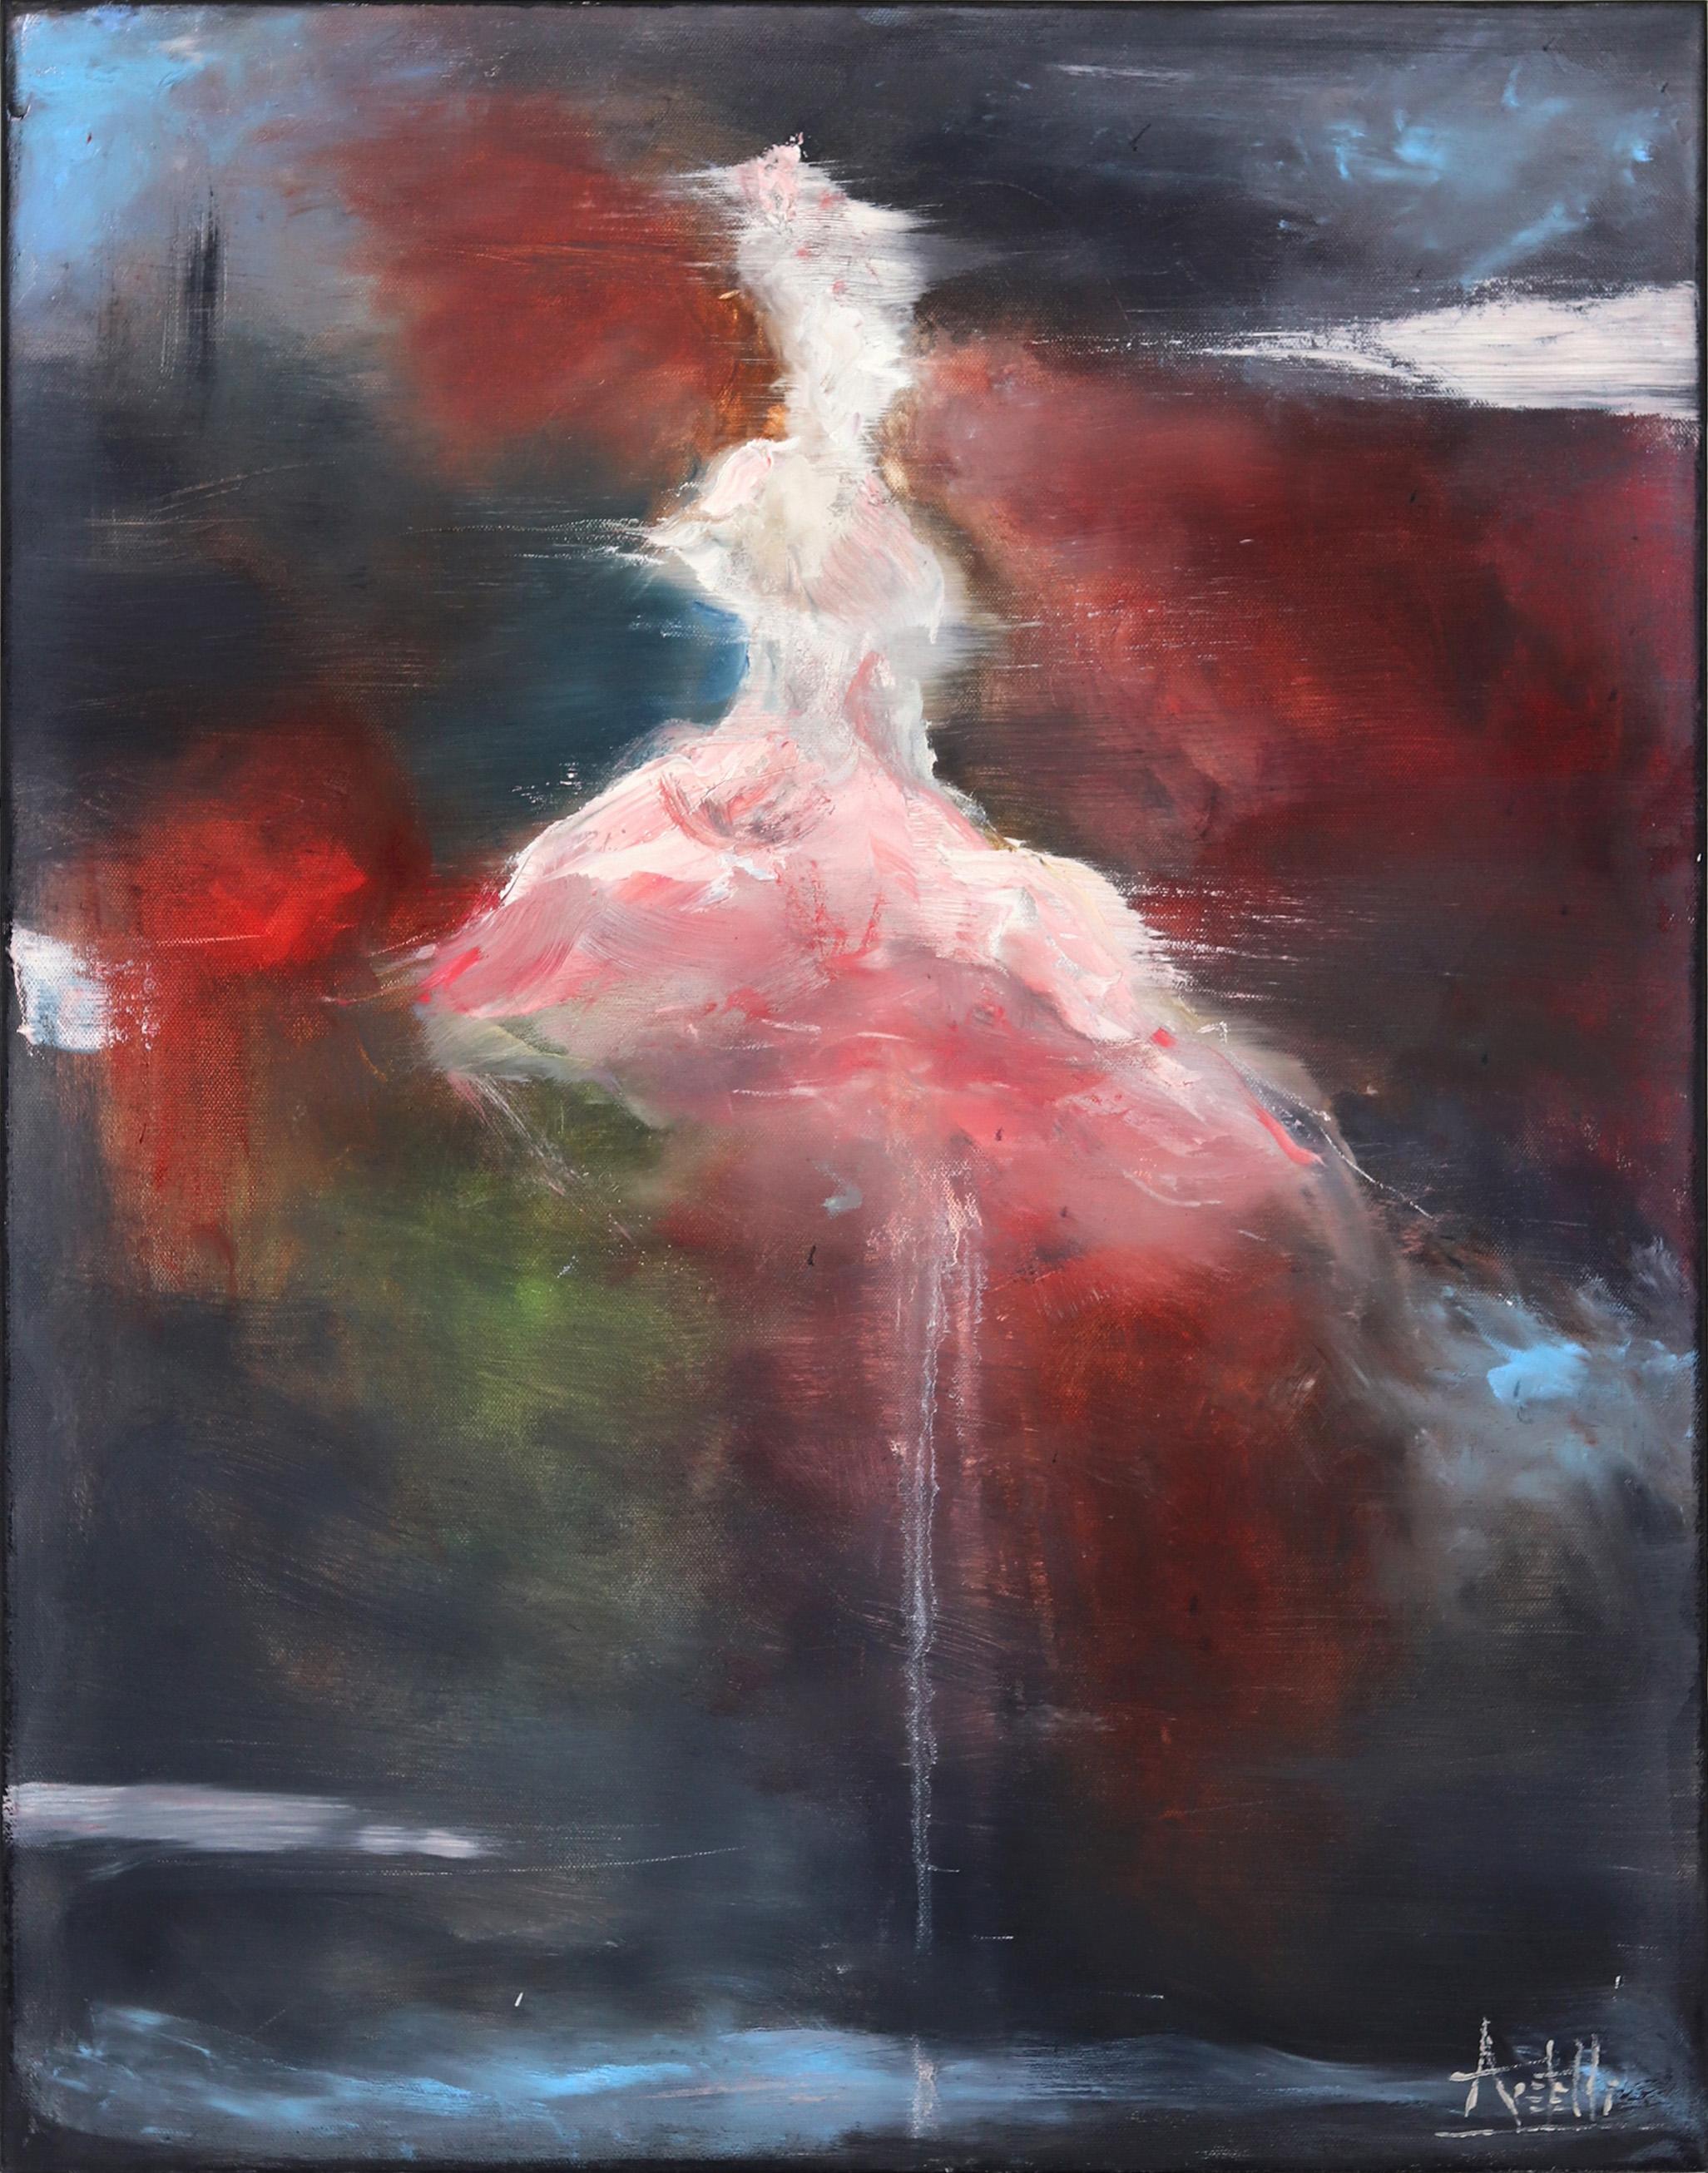 Abstract Painting Mark Acetelli - Callas #2 - Peinture à l'huile - Danseurs de ballerines figuratives surélevées